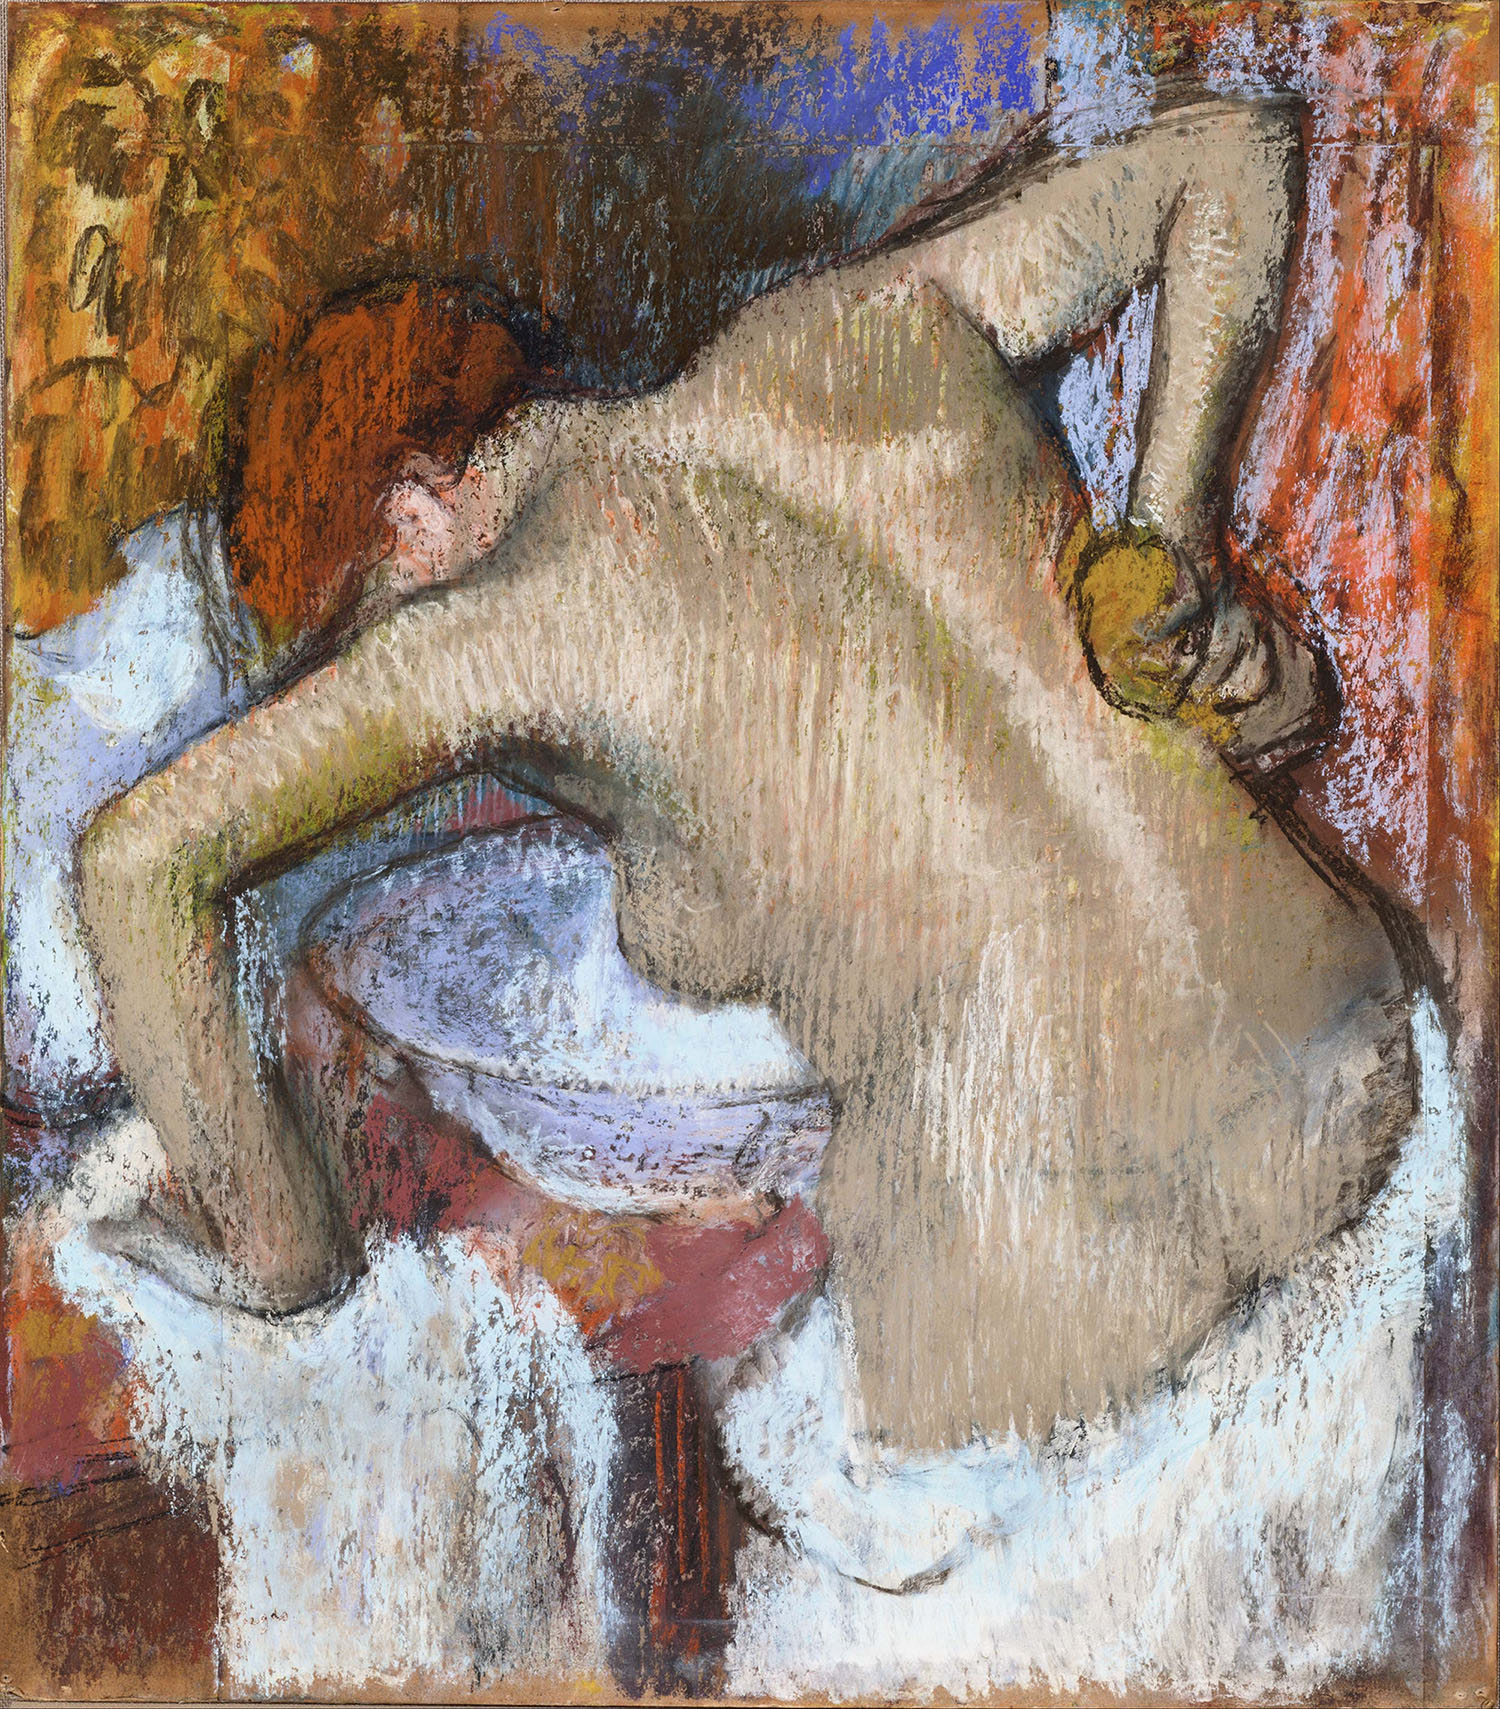 Эдгар Дега. "Женщина за туалетом". Около 1888-1892.